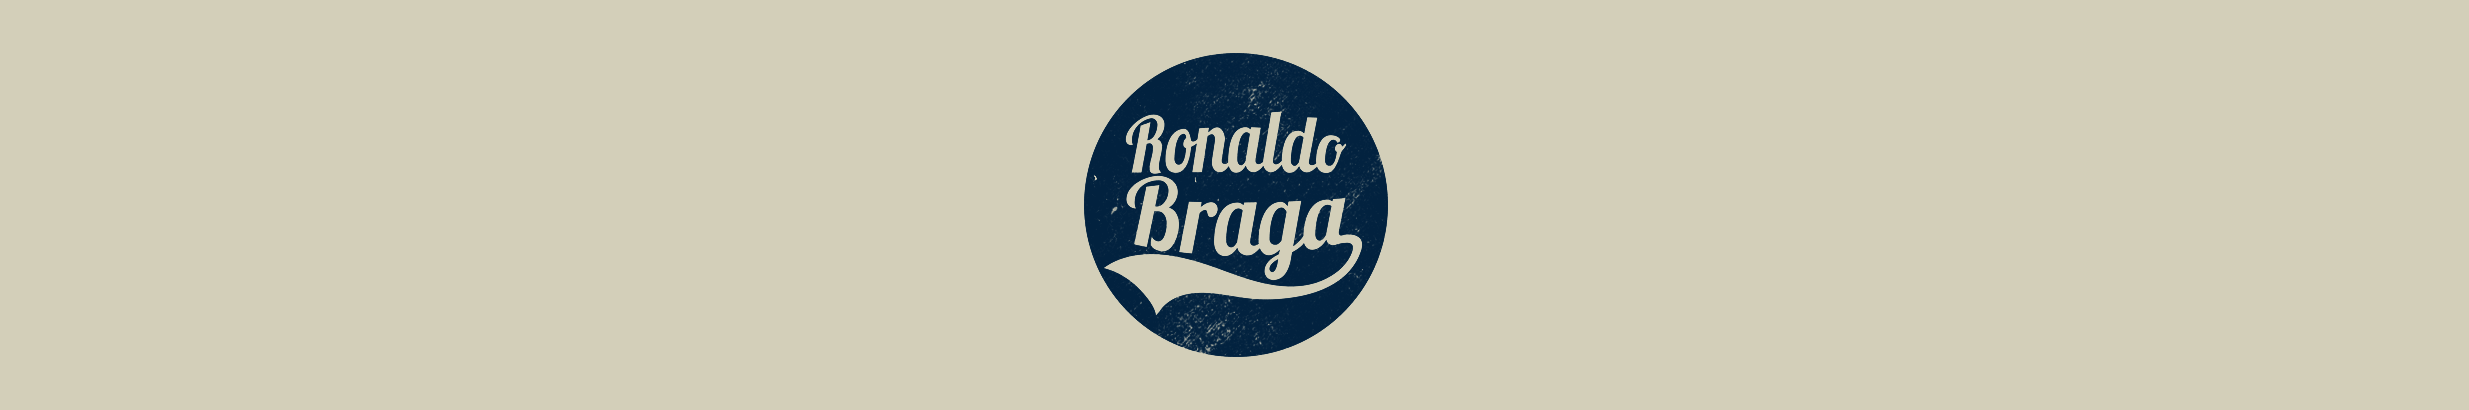 Ronaldo Braga's profile banner